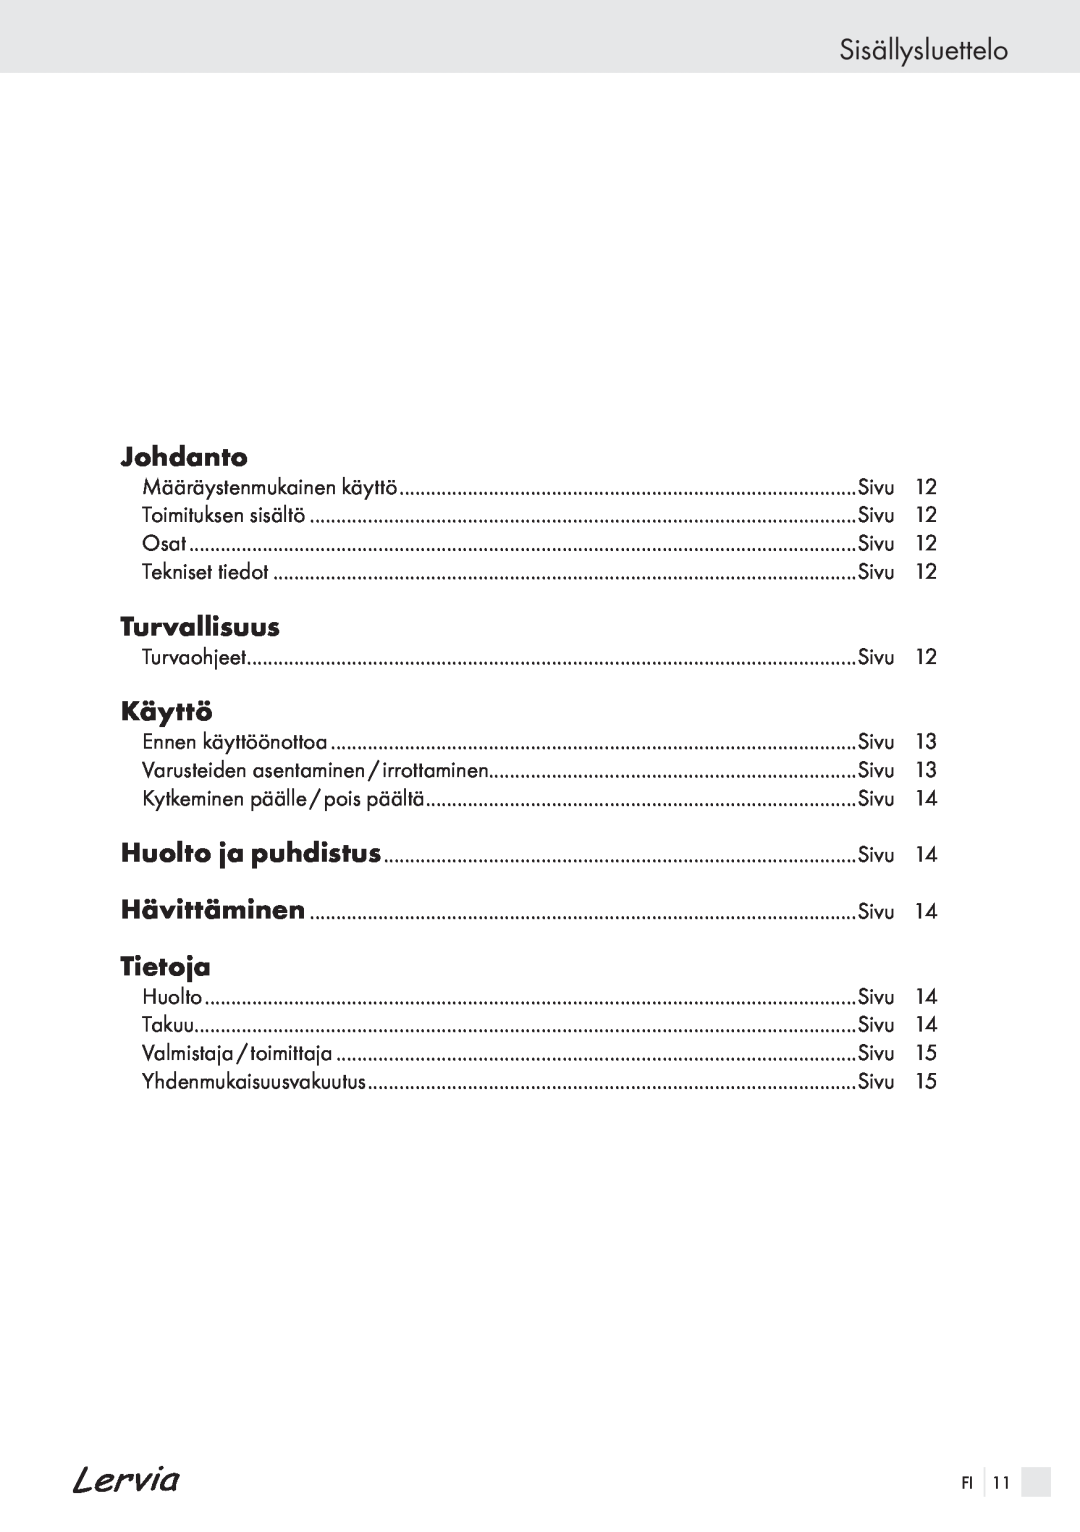 Kompernass KH 4425 manual Sisällysluettelo, Johdanto, Turvallisuus, Käyttö, Tietoja 